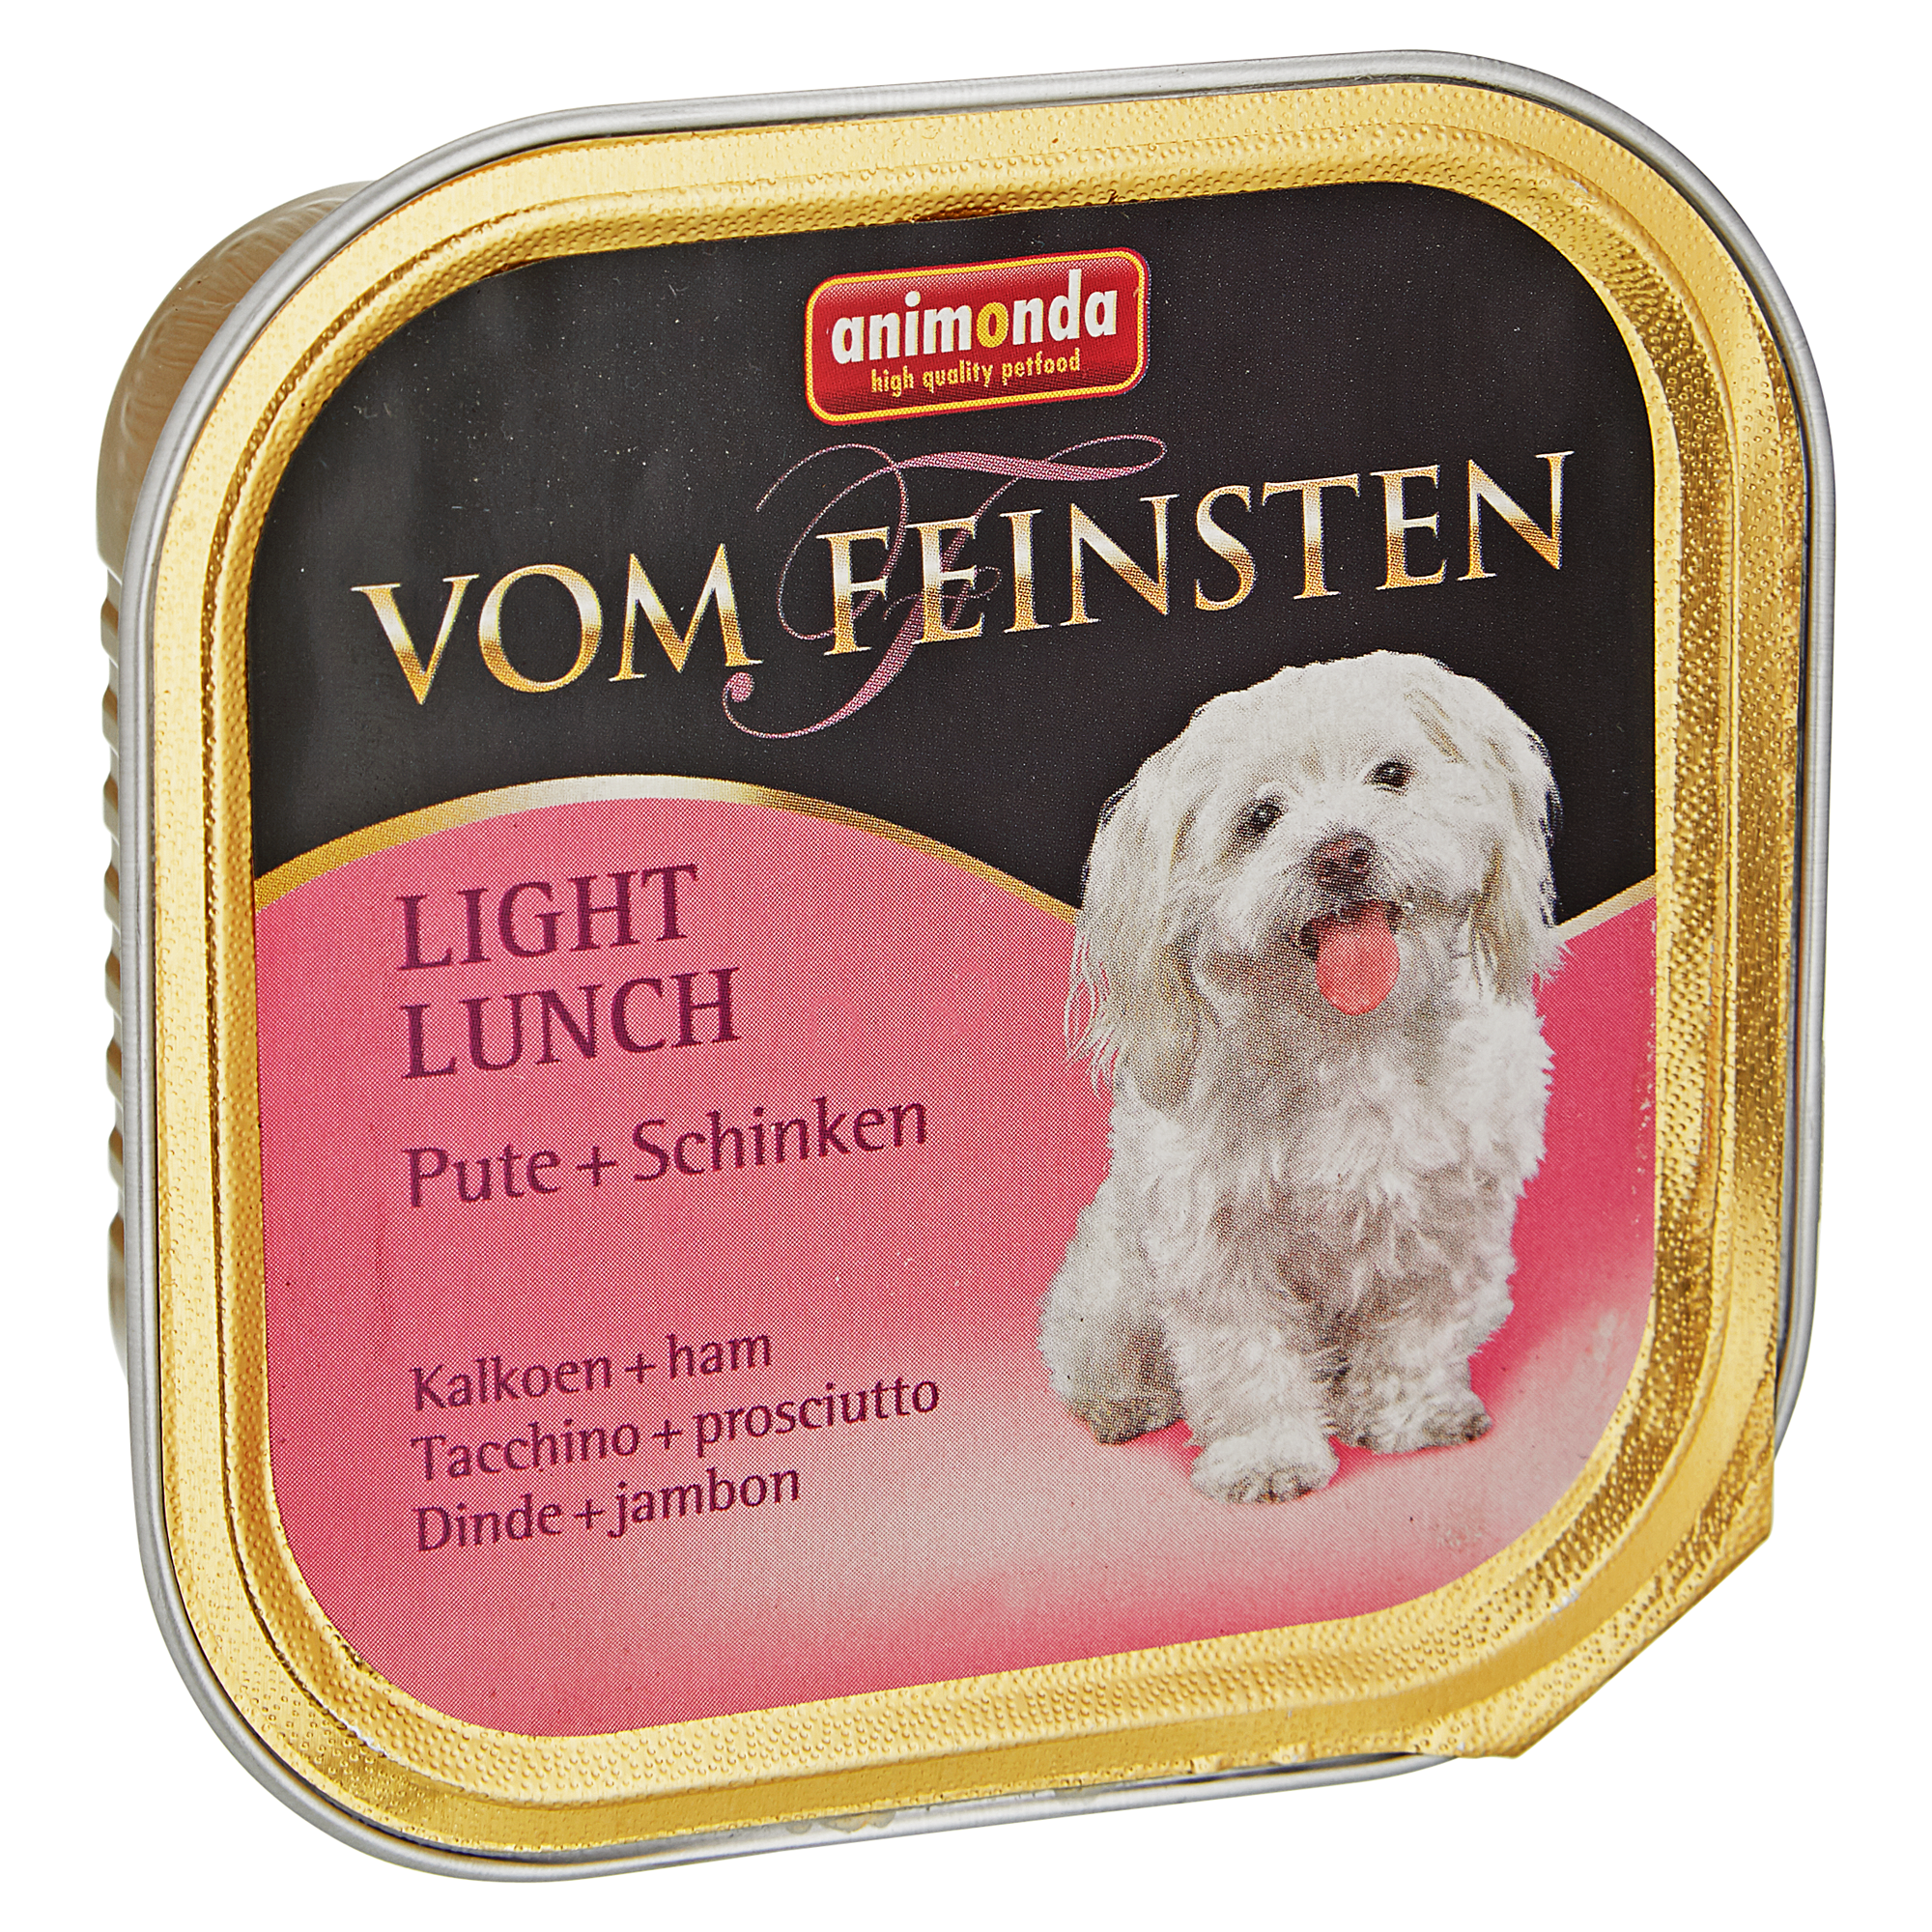 Hundenassfutter "Vom Feinsten" Light Lunch mit Pute/Schinken 150 g + product picture